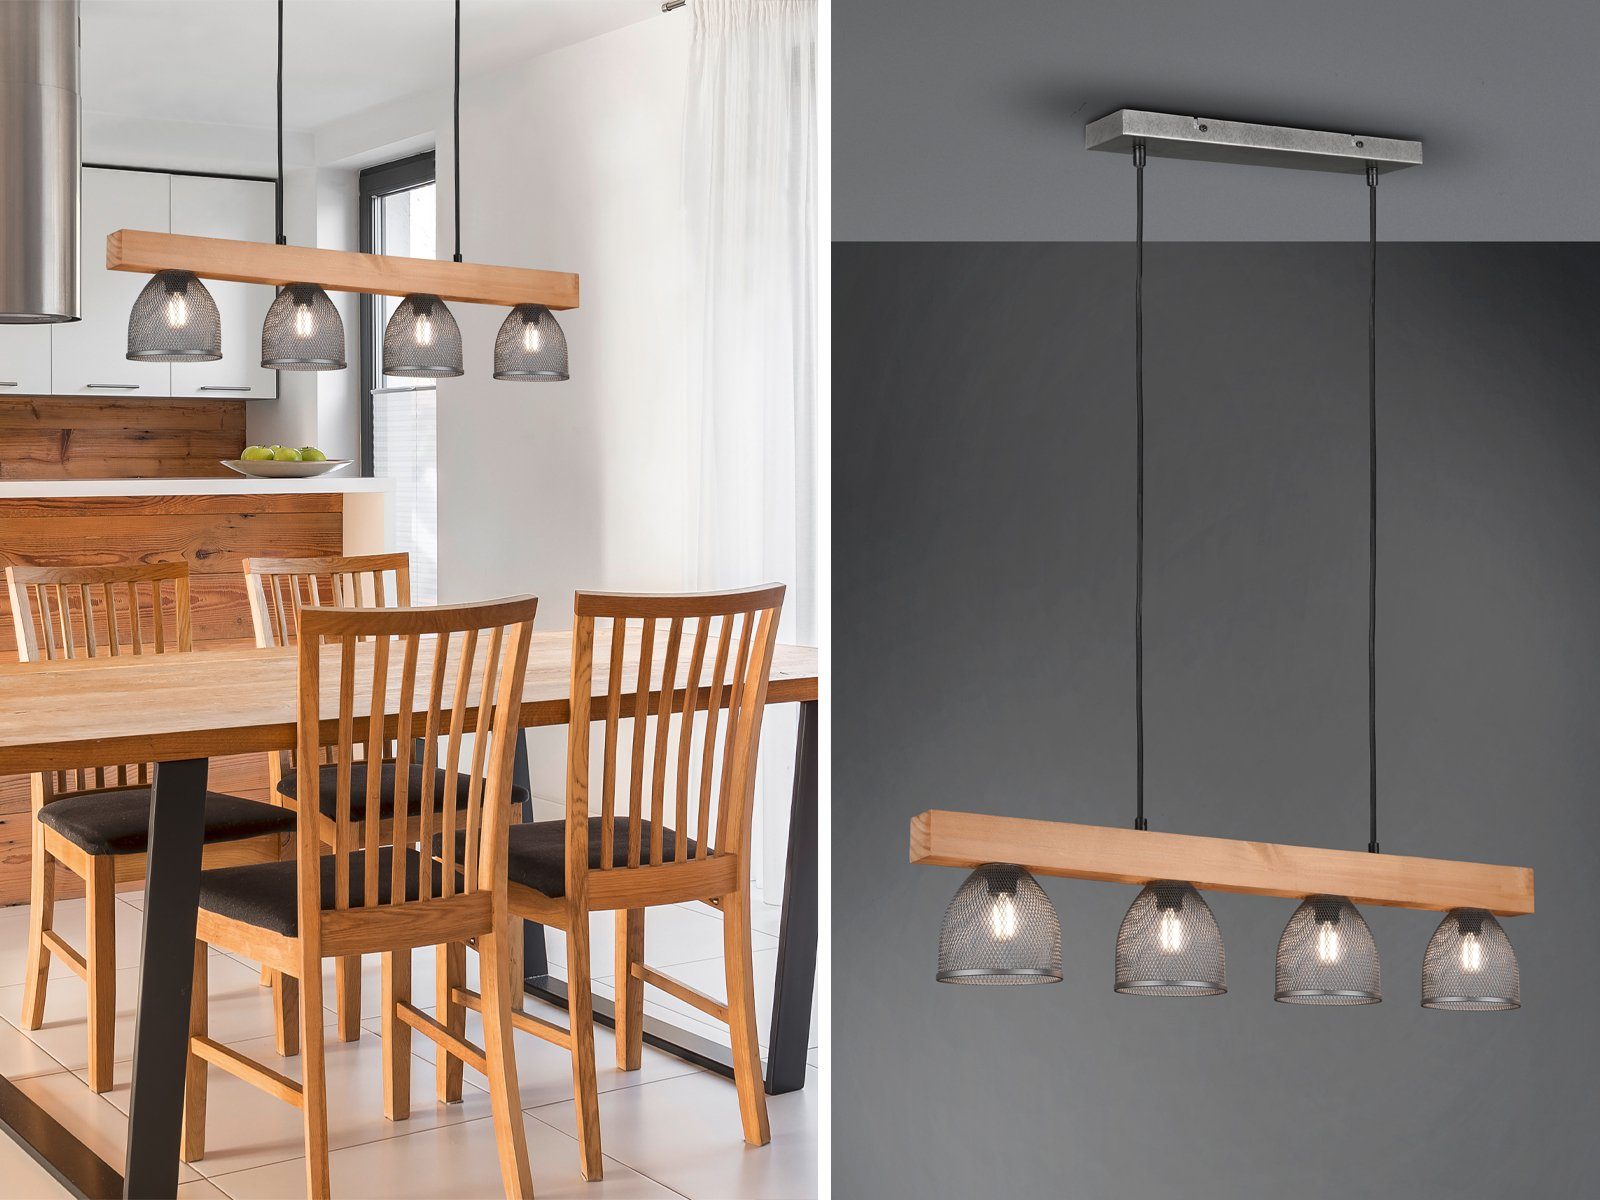 Design LED Hänge Decken Leuchte Wohn Gäste Zimmer ALU Geflecht Küchen Lampe 